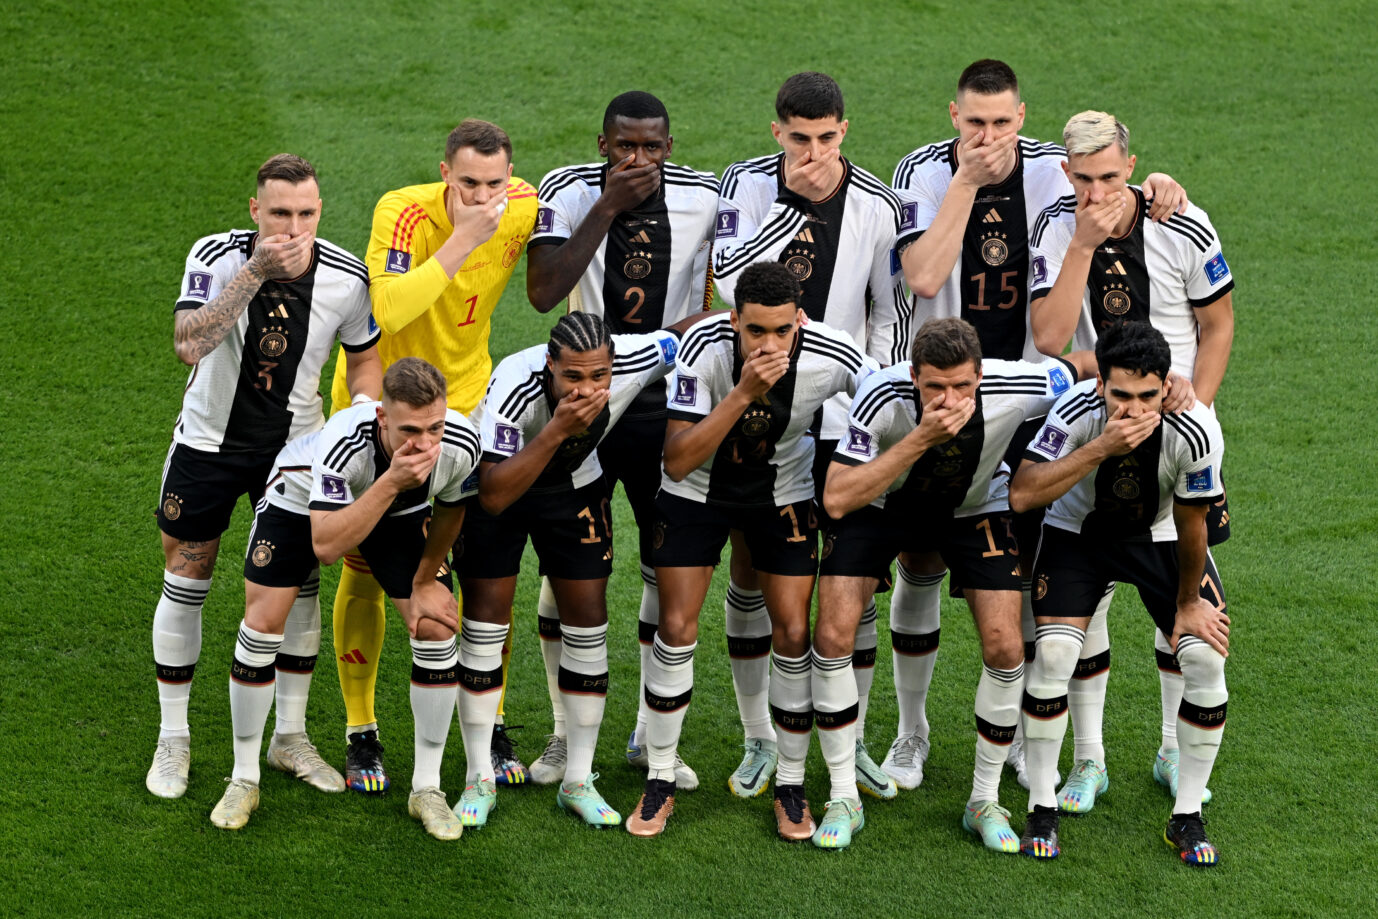 Mit der Mund-zu-Geste vor dem Spiel gegen Japan hatte sich die DFB-Auswahl weltweit lächerlich gemacht.